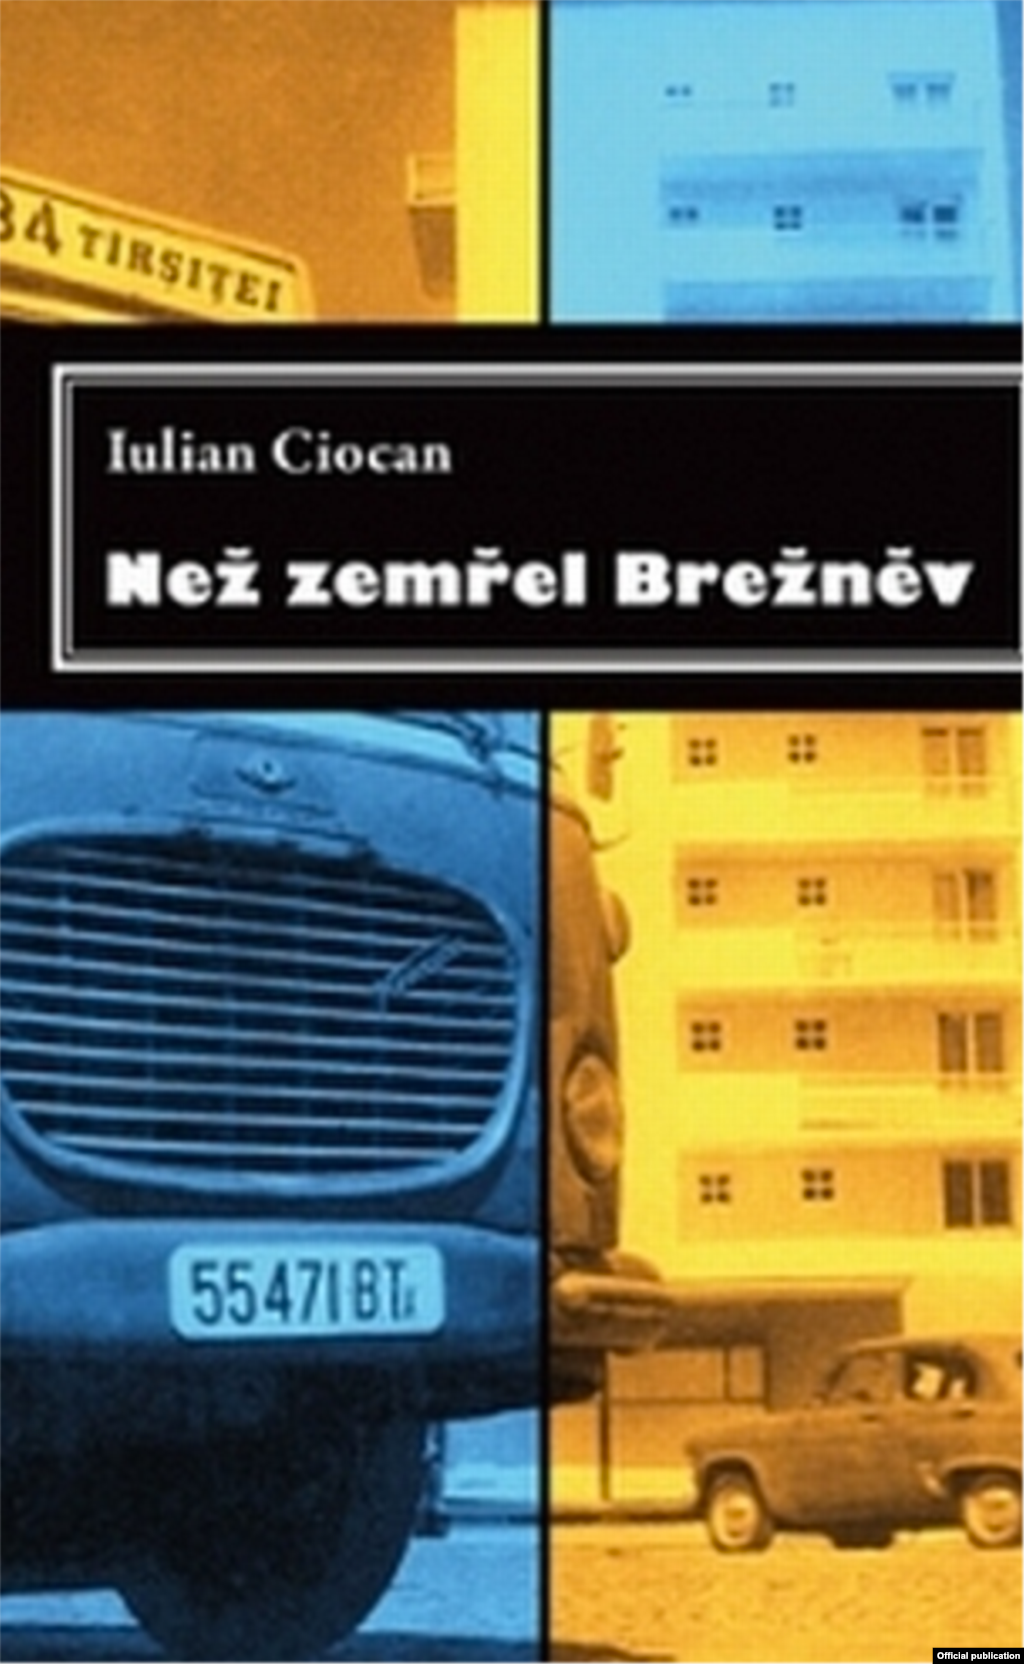 Cartea lui Iulian Ciocan în traducere cehă.